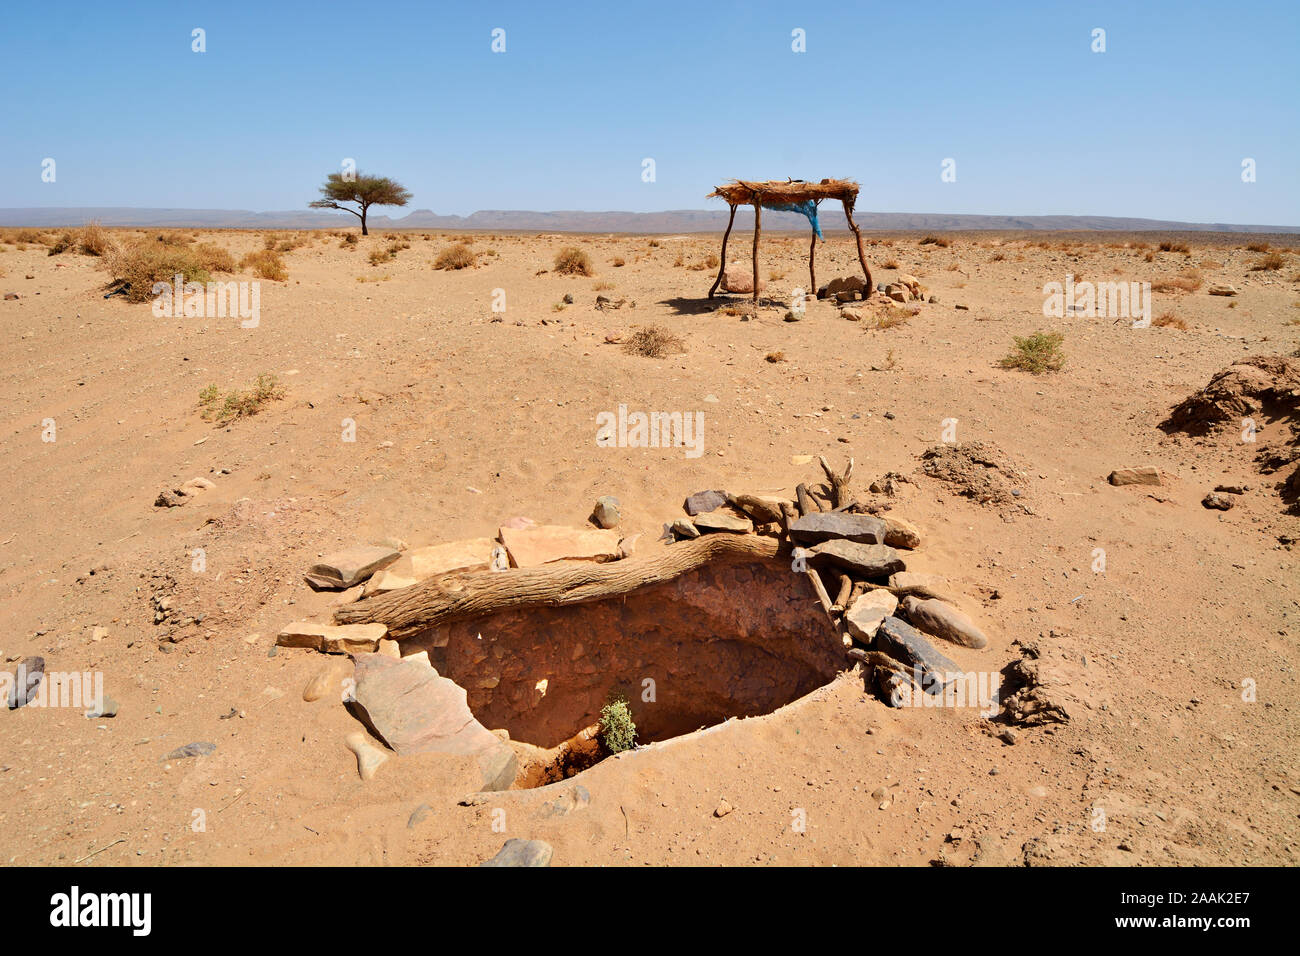 Water well in the desert. Erg Chigaga, Sahara desert. Morocco Stock Photo